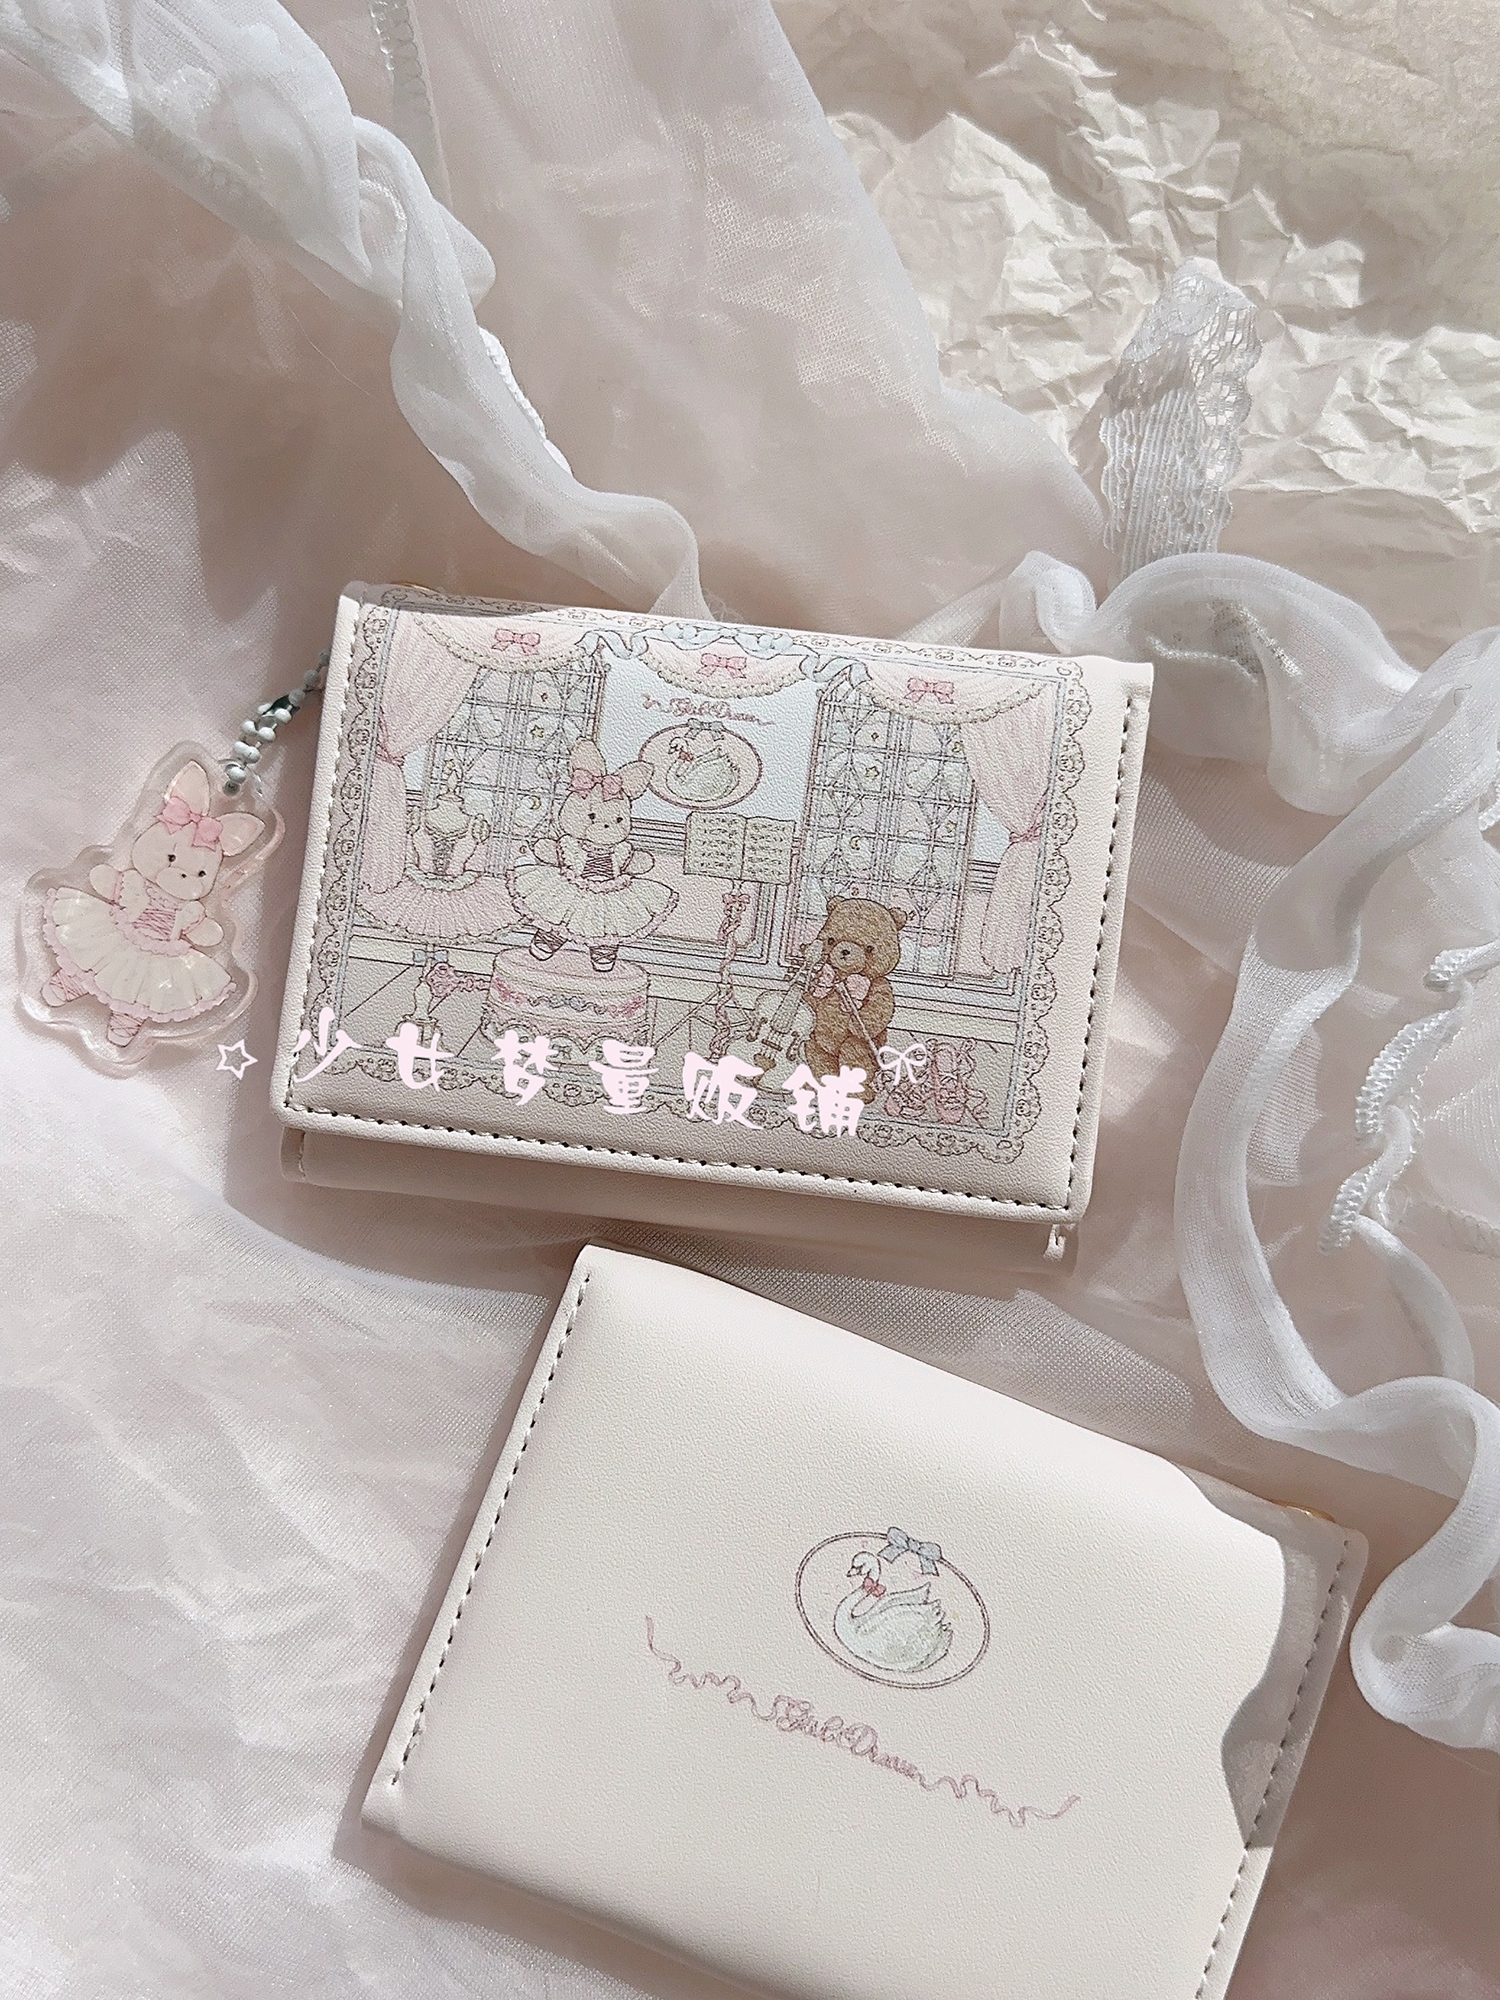 少女梦量贩铺原创设计芭蕾兔熊钱包可爱防消磁多卡位磁扣